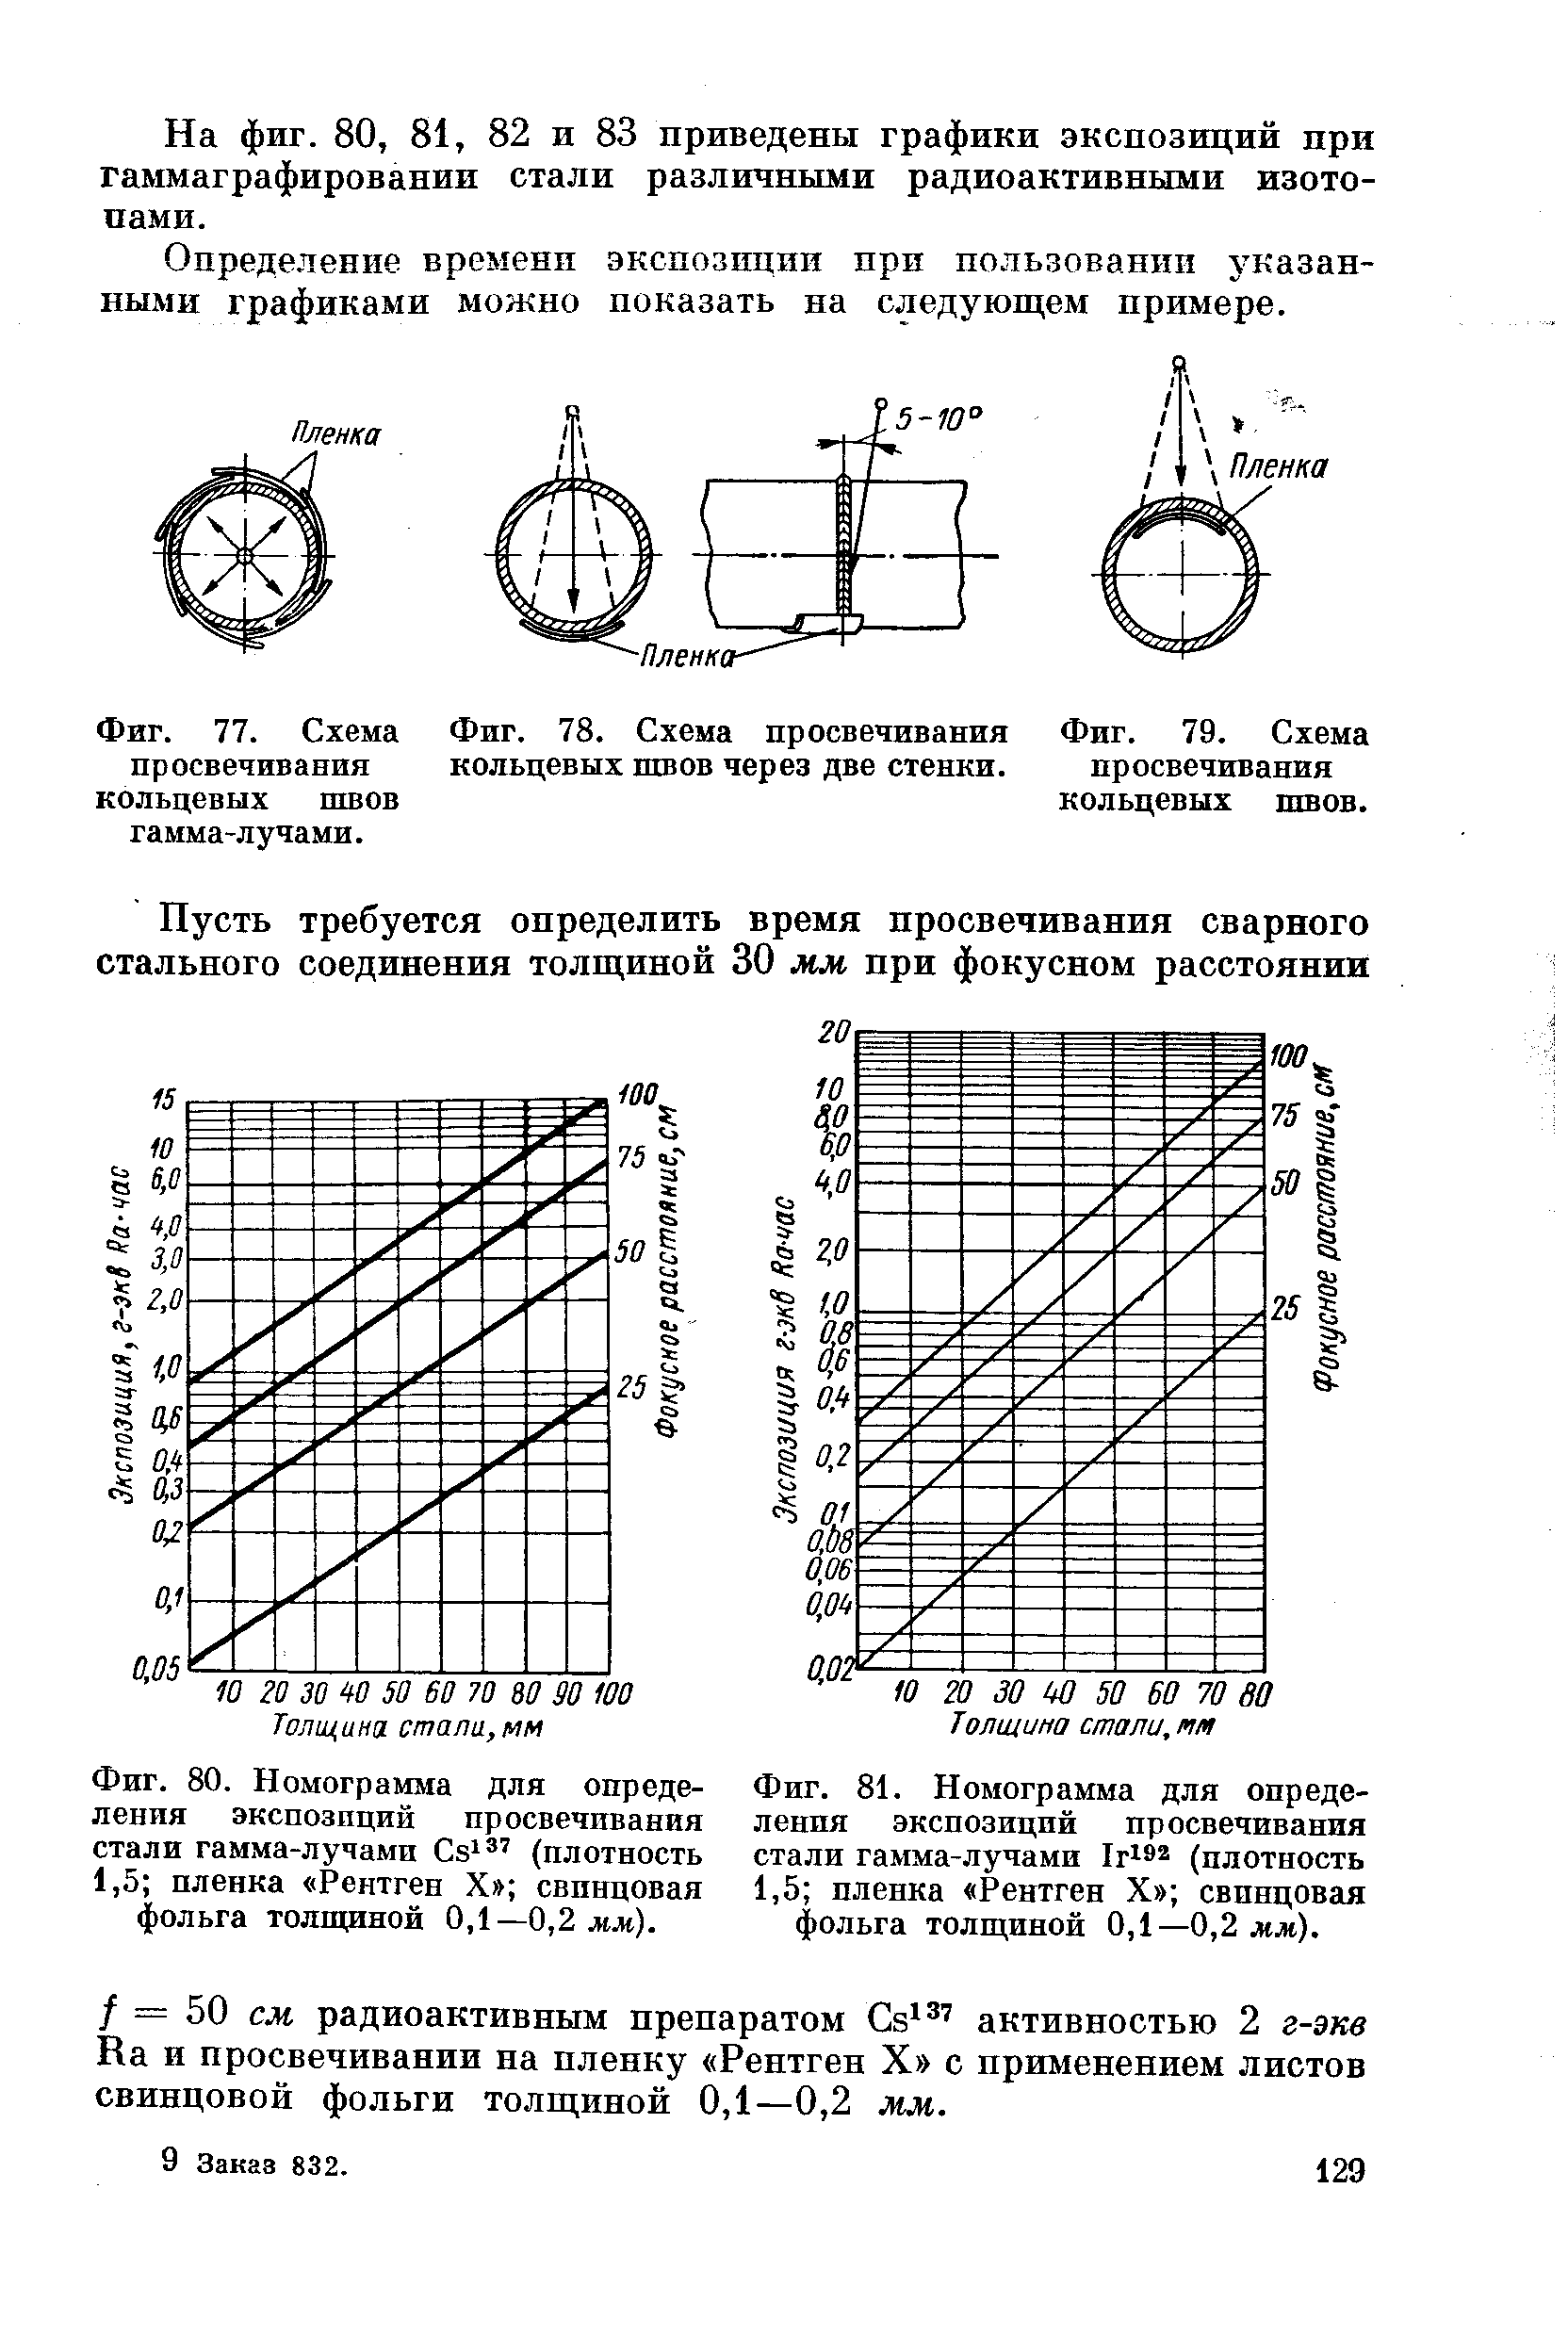 Фиг. 77. <a href="/info/88751">Схема просвечивания</a> кольцевых швов гамма-лучами.
